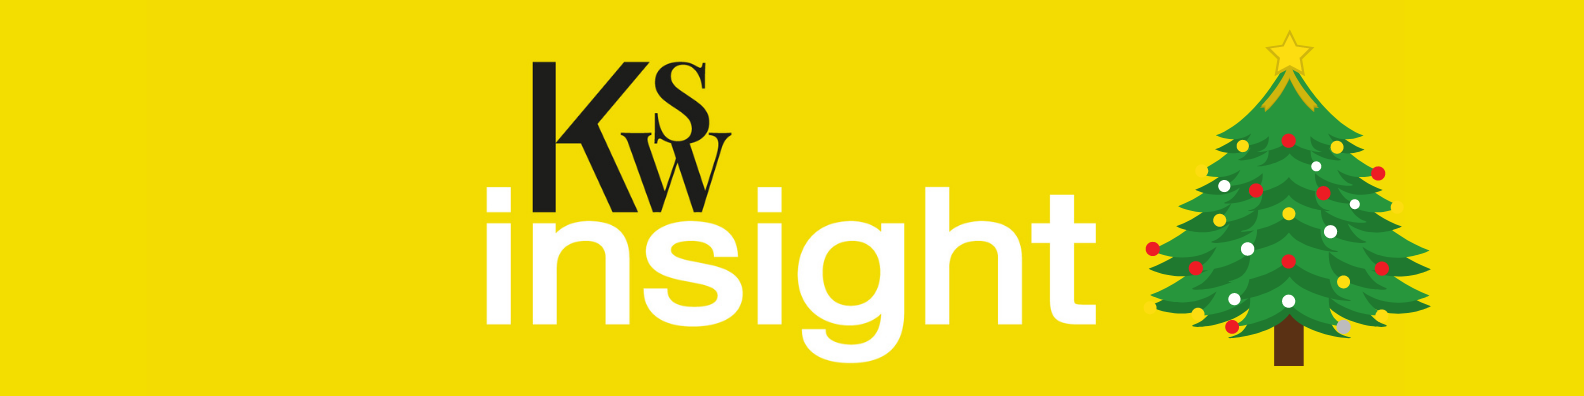 KSW Insight Newsletter | December 2021